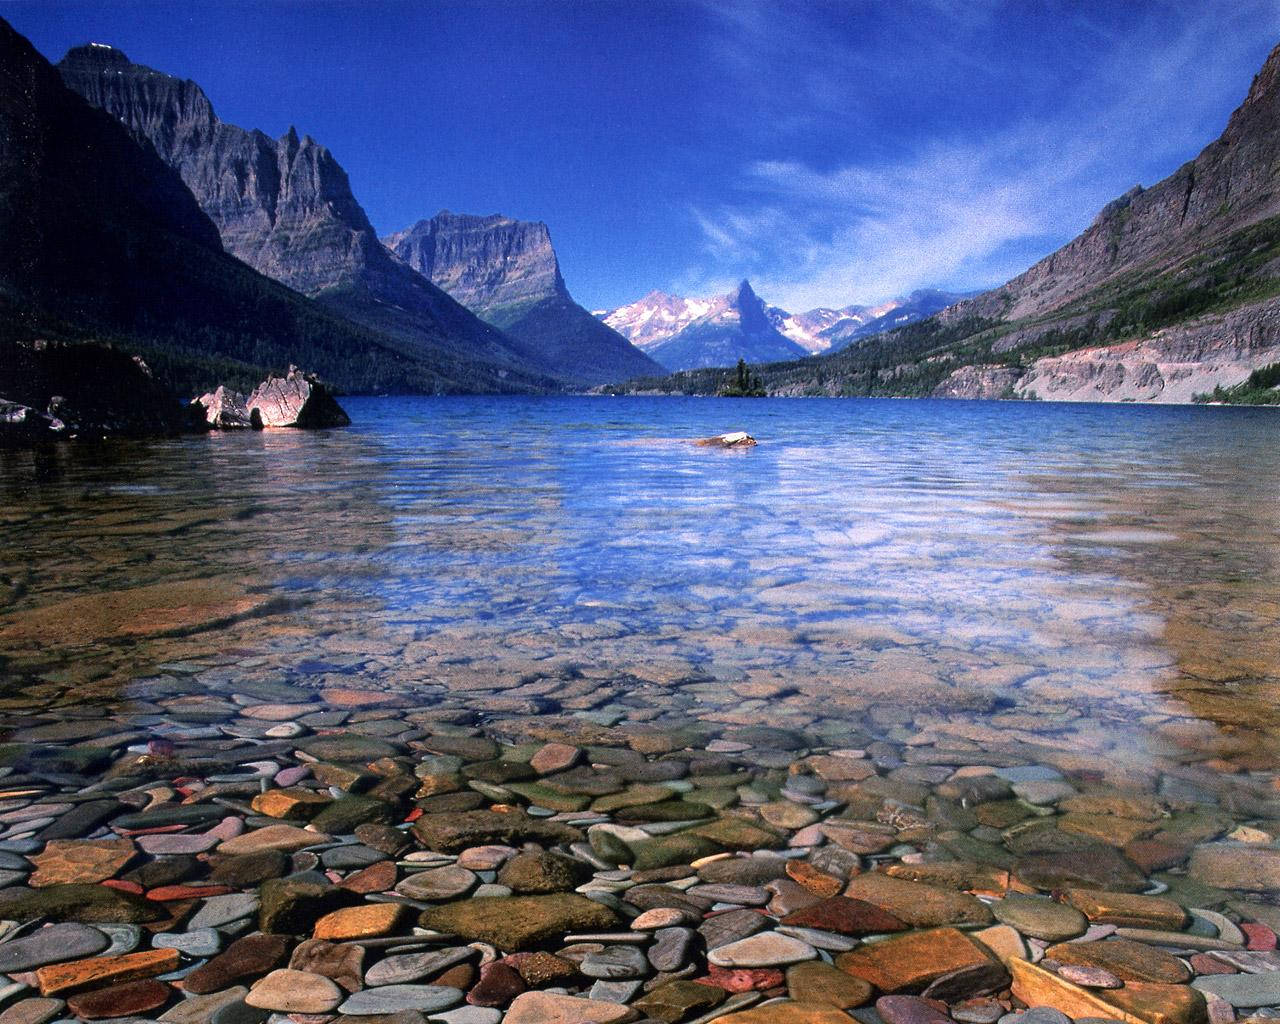 Reflection: Vis som et naturligt dansk taler og reflekter den klare Vand i Glacier National Park. Wallpaper